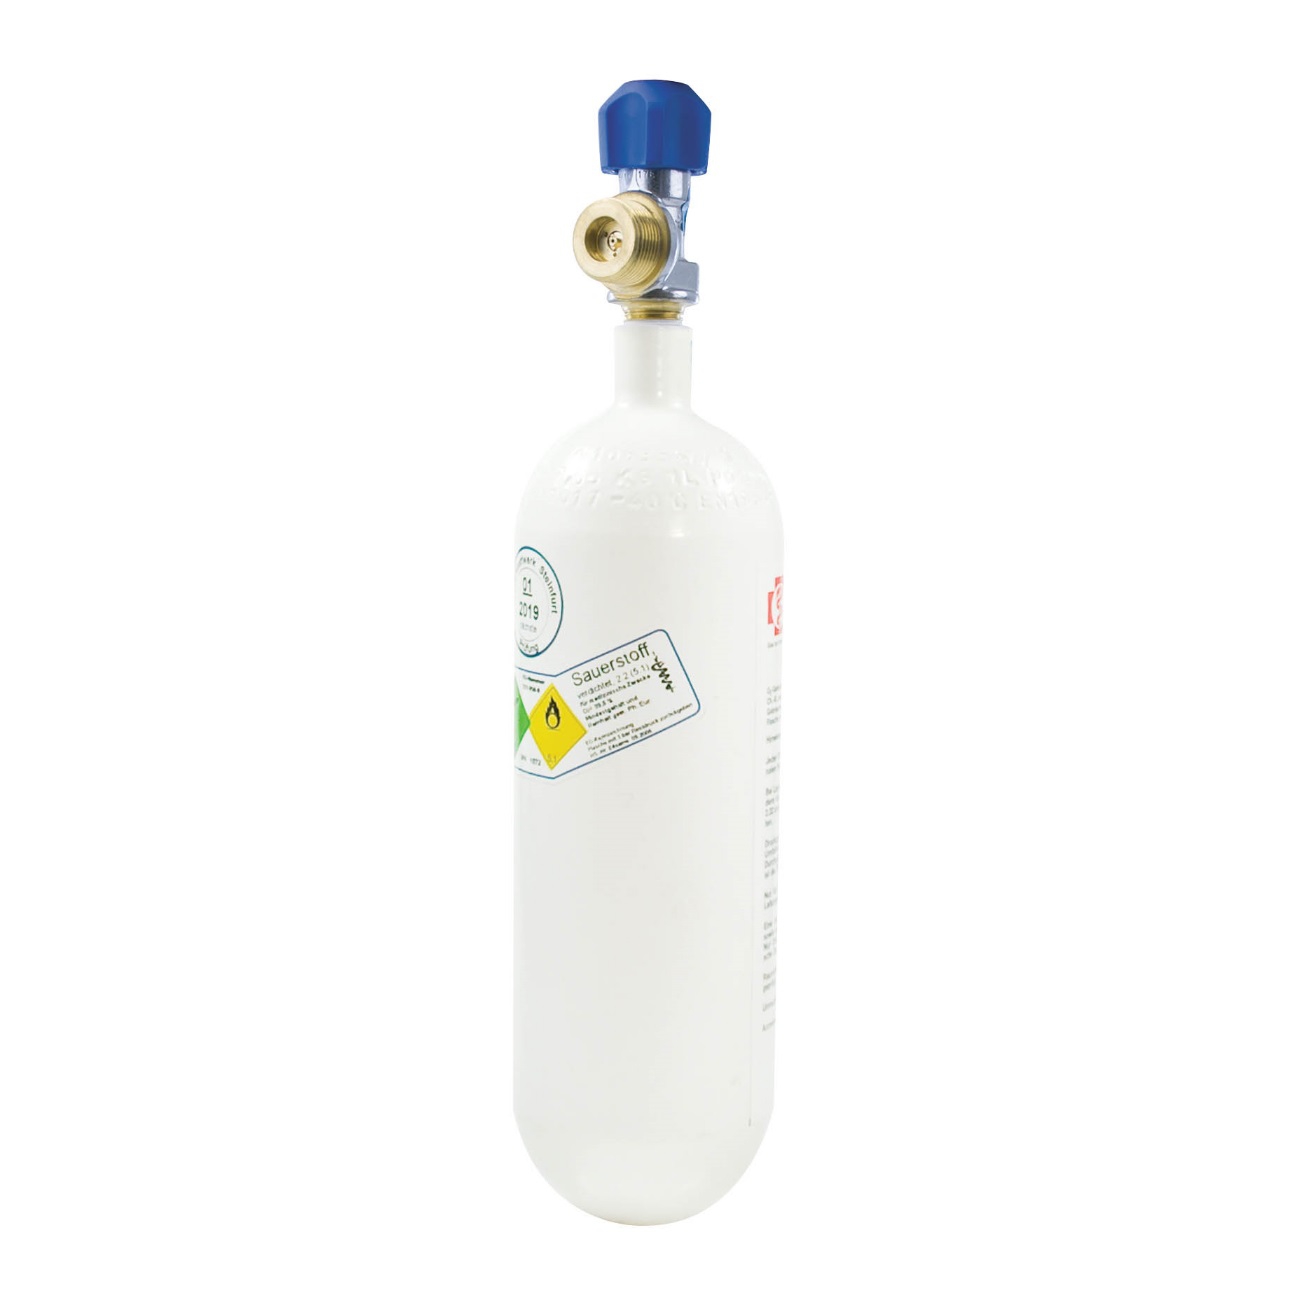 Sauerstoffflasche 2,0 Liter Alu gebürstet - SAN-SHOP Erste-Hilfe